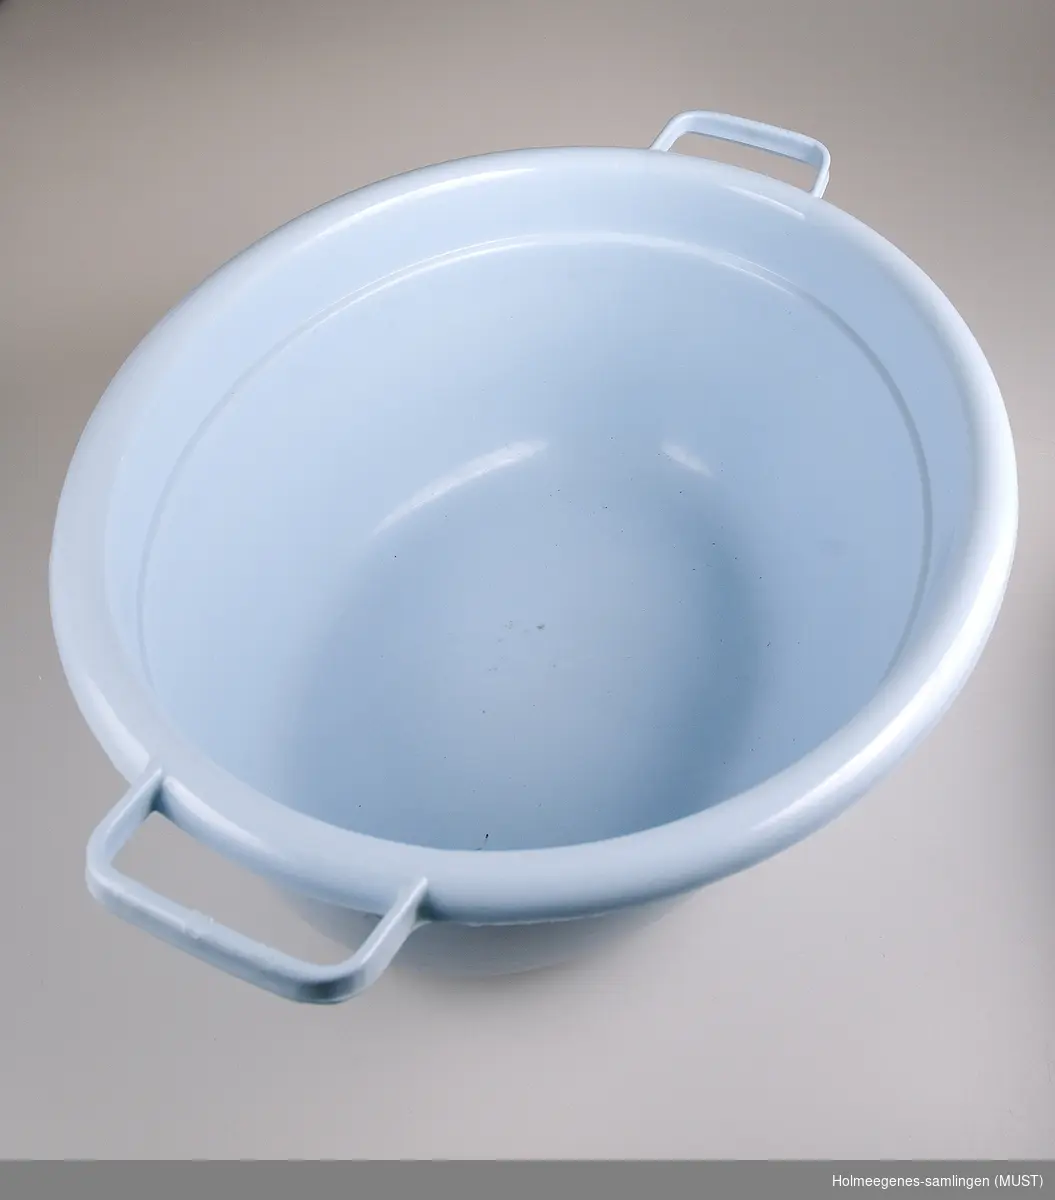 Lysblå oval vaskebalje av plast med to håndtak.